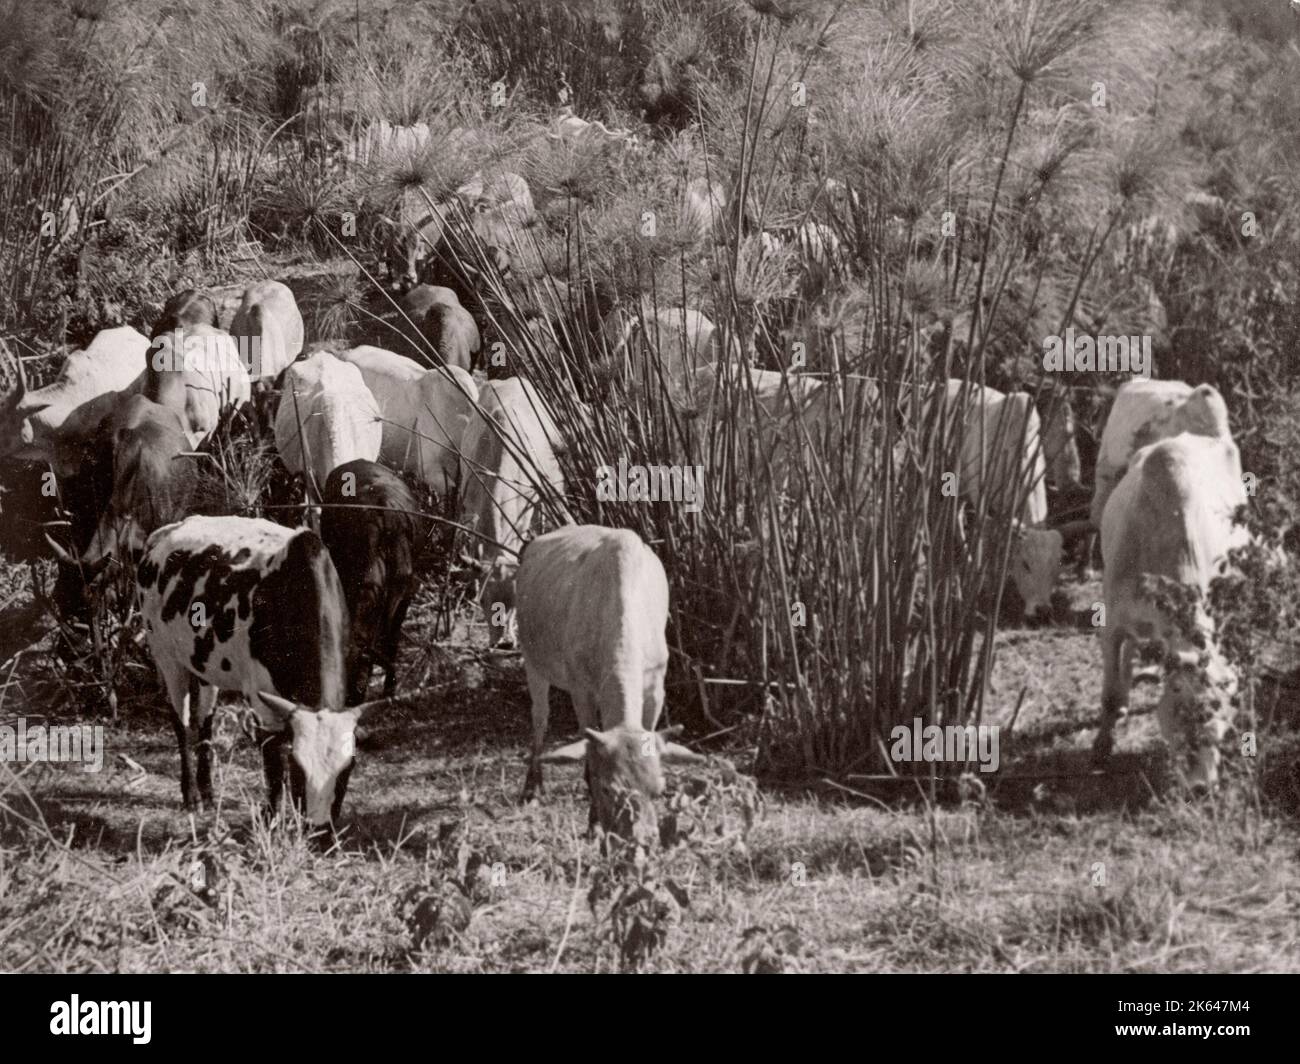 1940s Africa orientale - fotografia di bovini da cross-bred africani nativi di un ufficiale di reclutamento dell'esercito britannico di stanza in Africa orientale e in Medio Oriente durante la seconda guerra mondiale Foto Stock